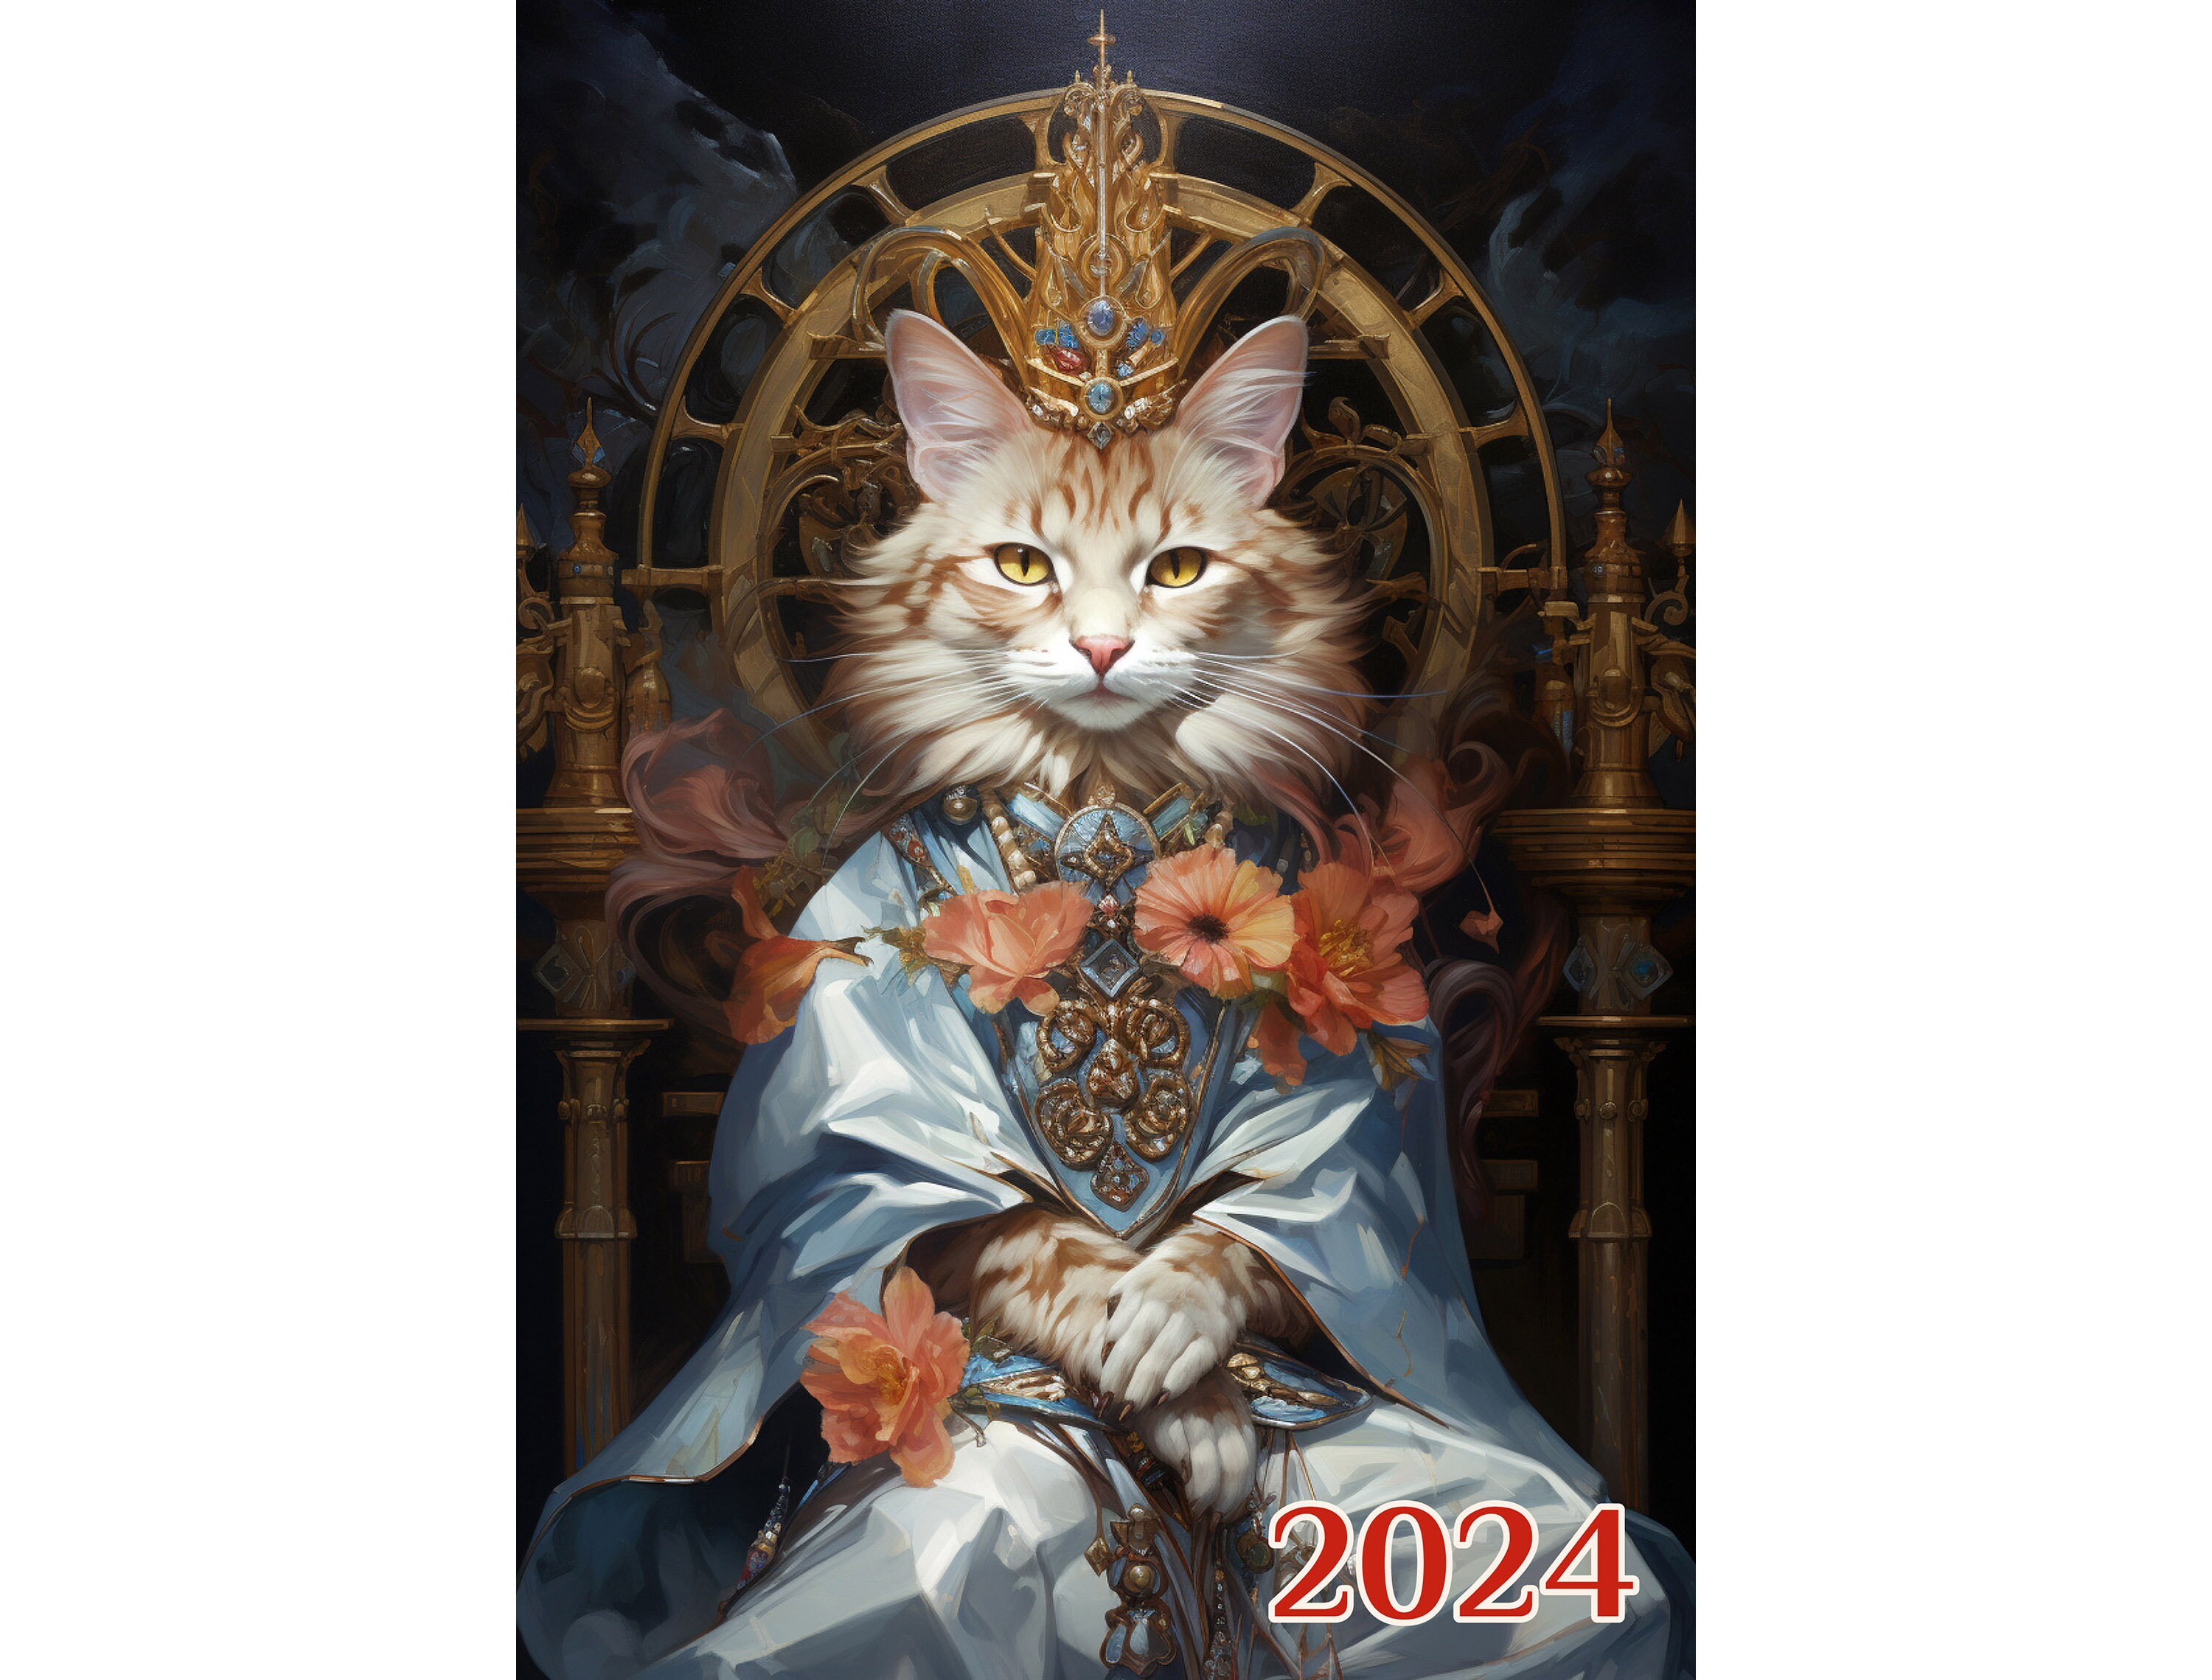 Calendrier mural 2024 Chats mignons habillés en robes de mode roses  fantaisie Affiche d'illustration de livre vintage m7-2116 -  France